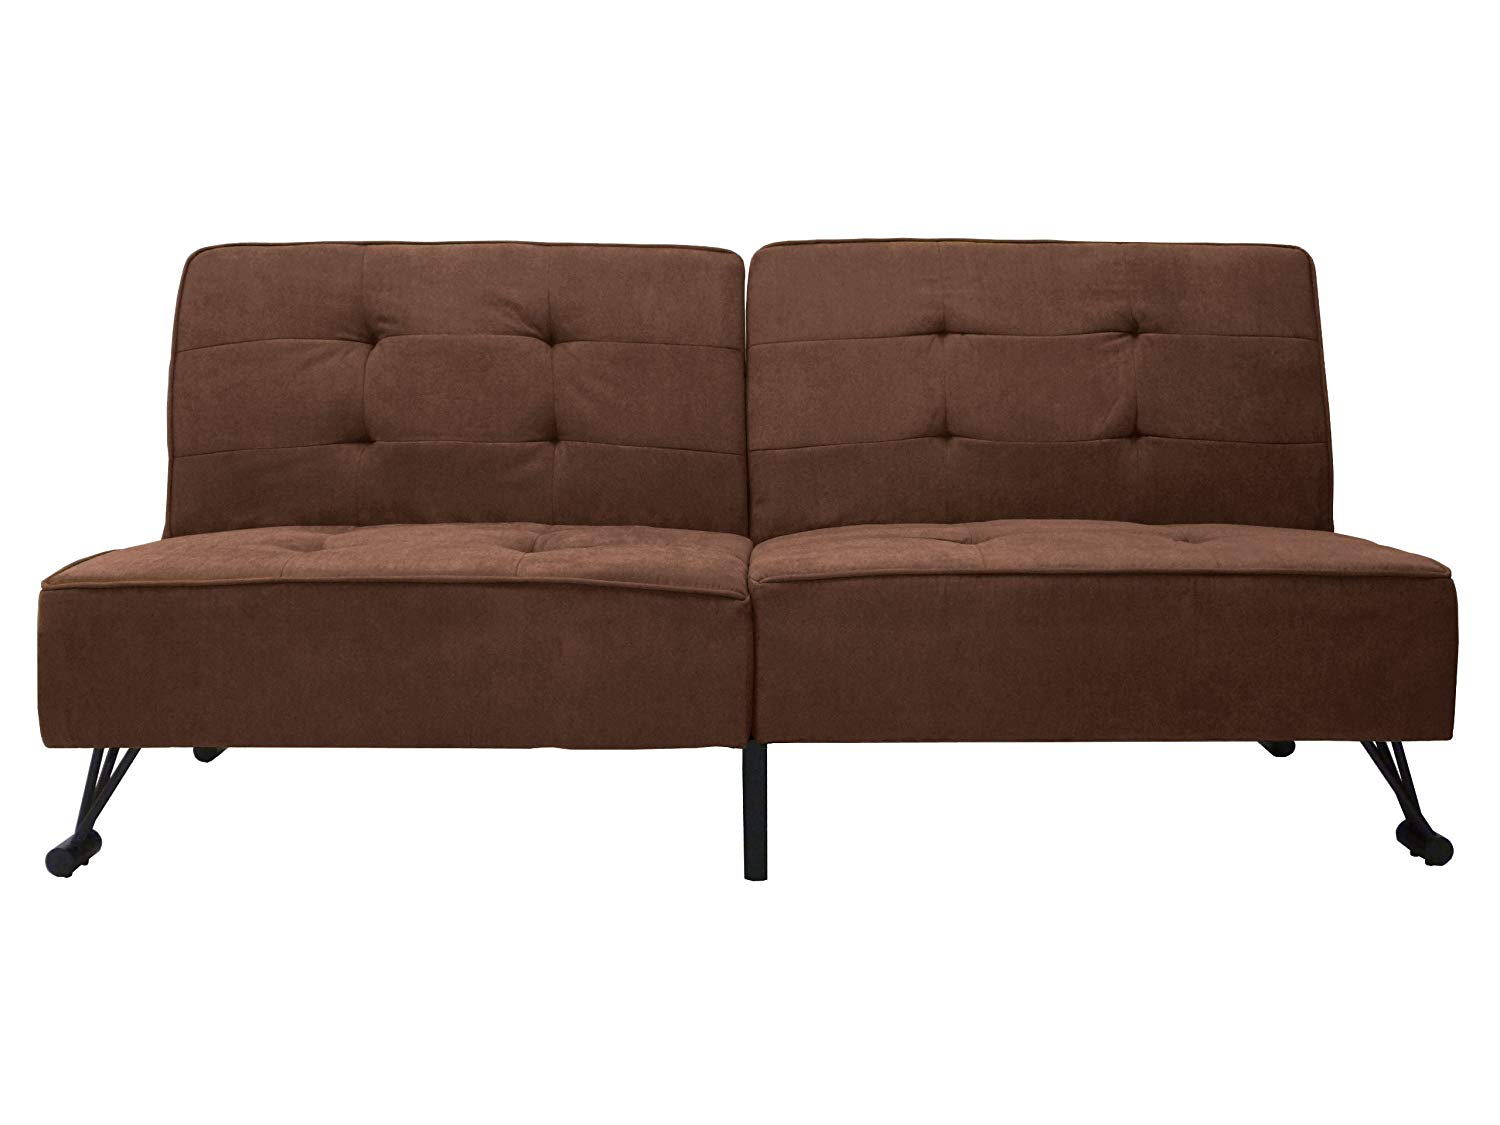 Gartenaccessoires Modern Einzigartig Linen Fabric Hom Clack Couch Modern Convertible